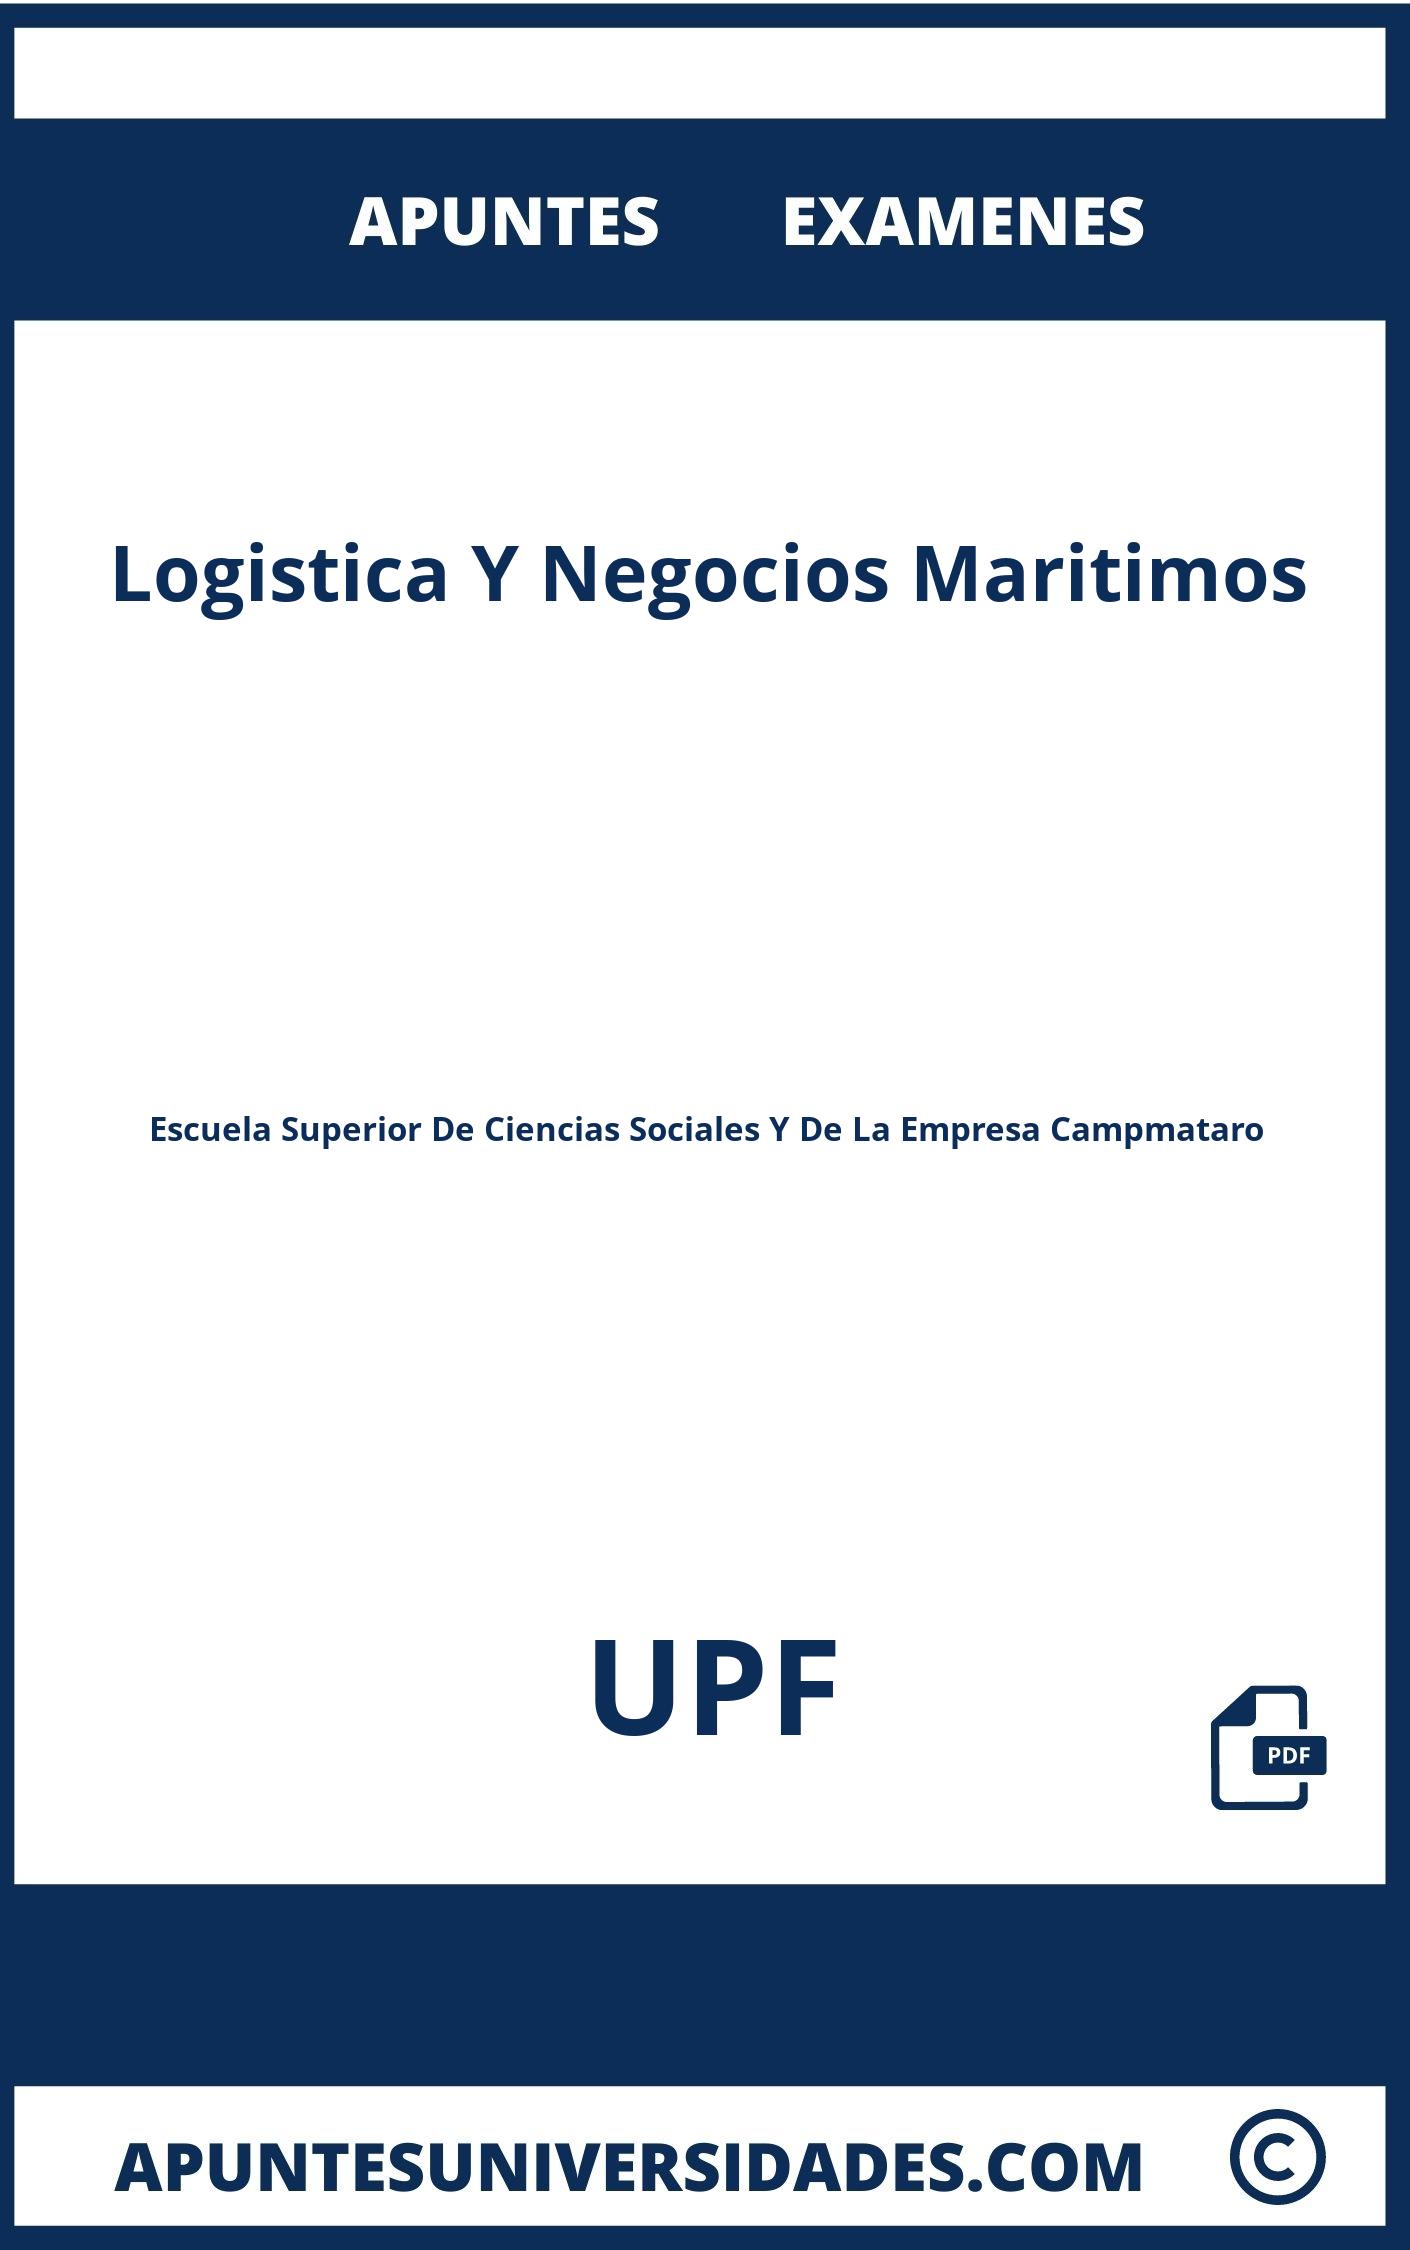 Examenes Apuntes Logistica Y Negocios Maritimos UPF